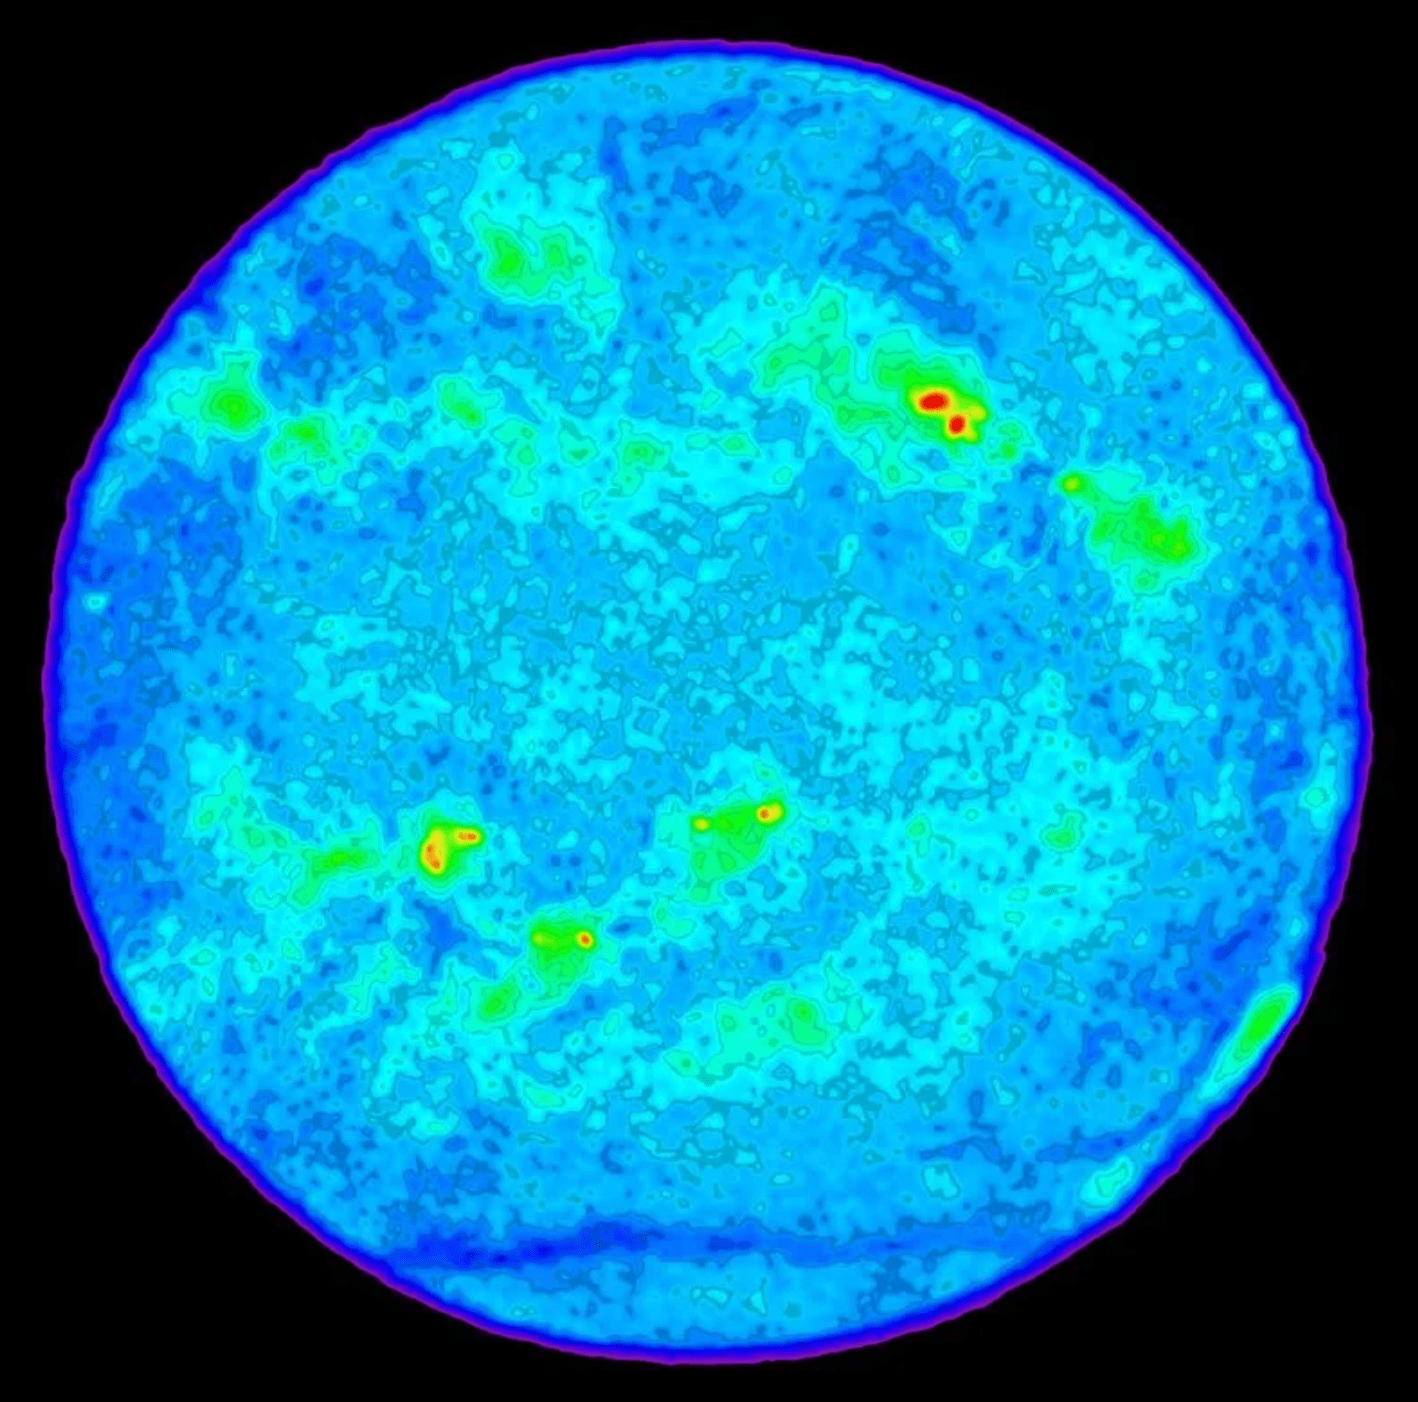 Esta imagen de radio del Sol fue hecha con un radiotelescopio. Muestra regiones brillantes (en rojo y amarillo) de gas a millones de grados de temperatura, por encima de las manchas solares.